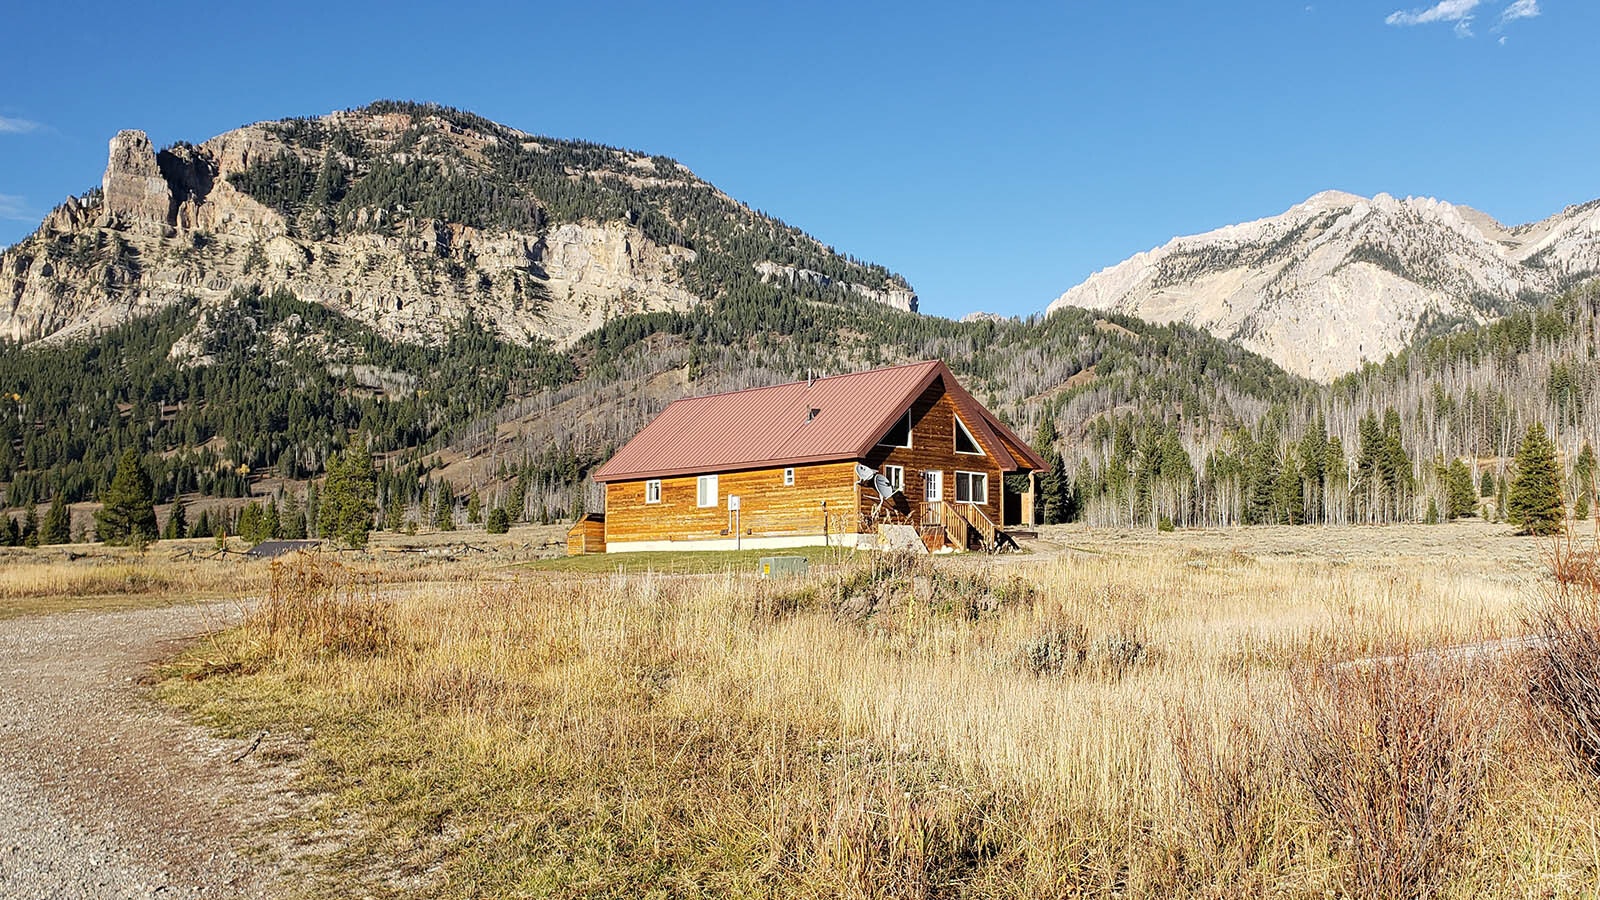 The caretakers' residence at Granite Creek Lodge.